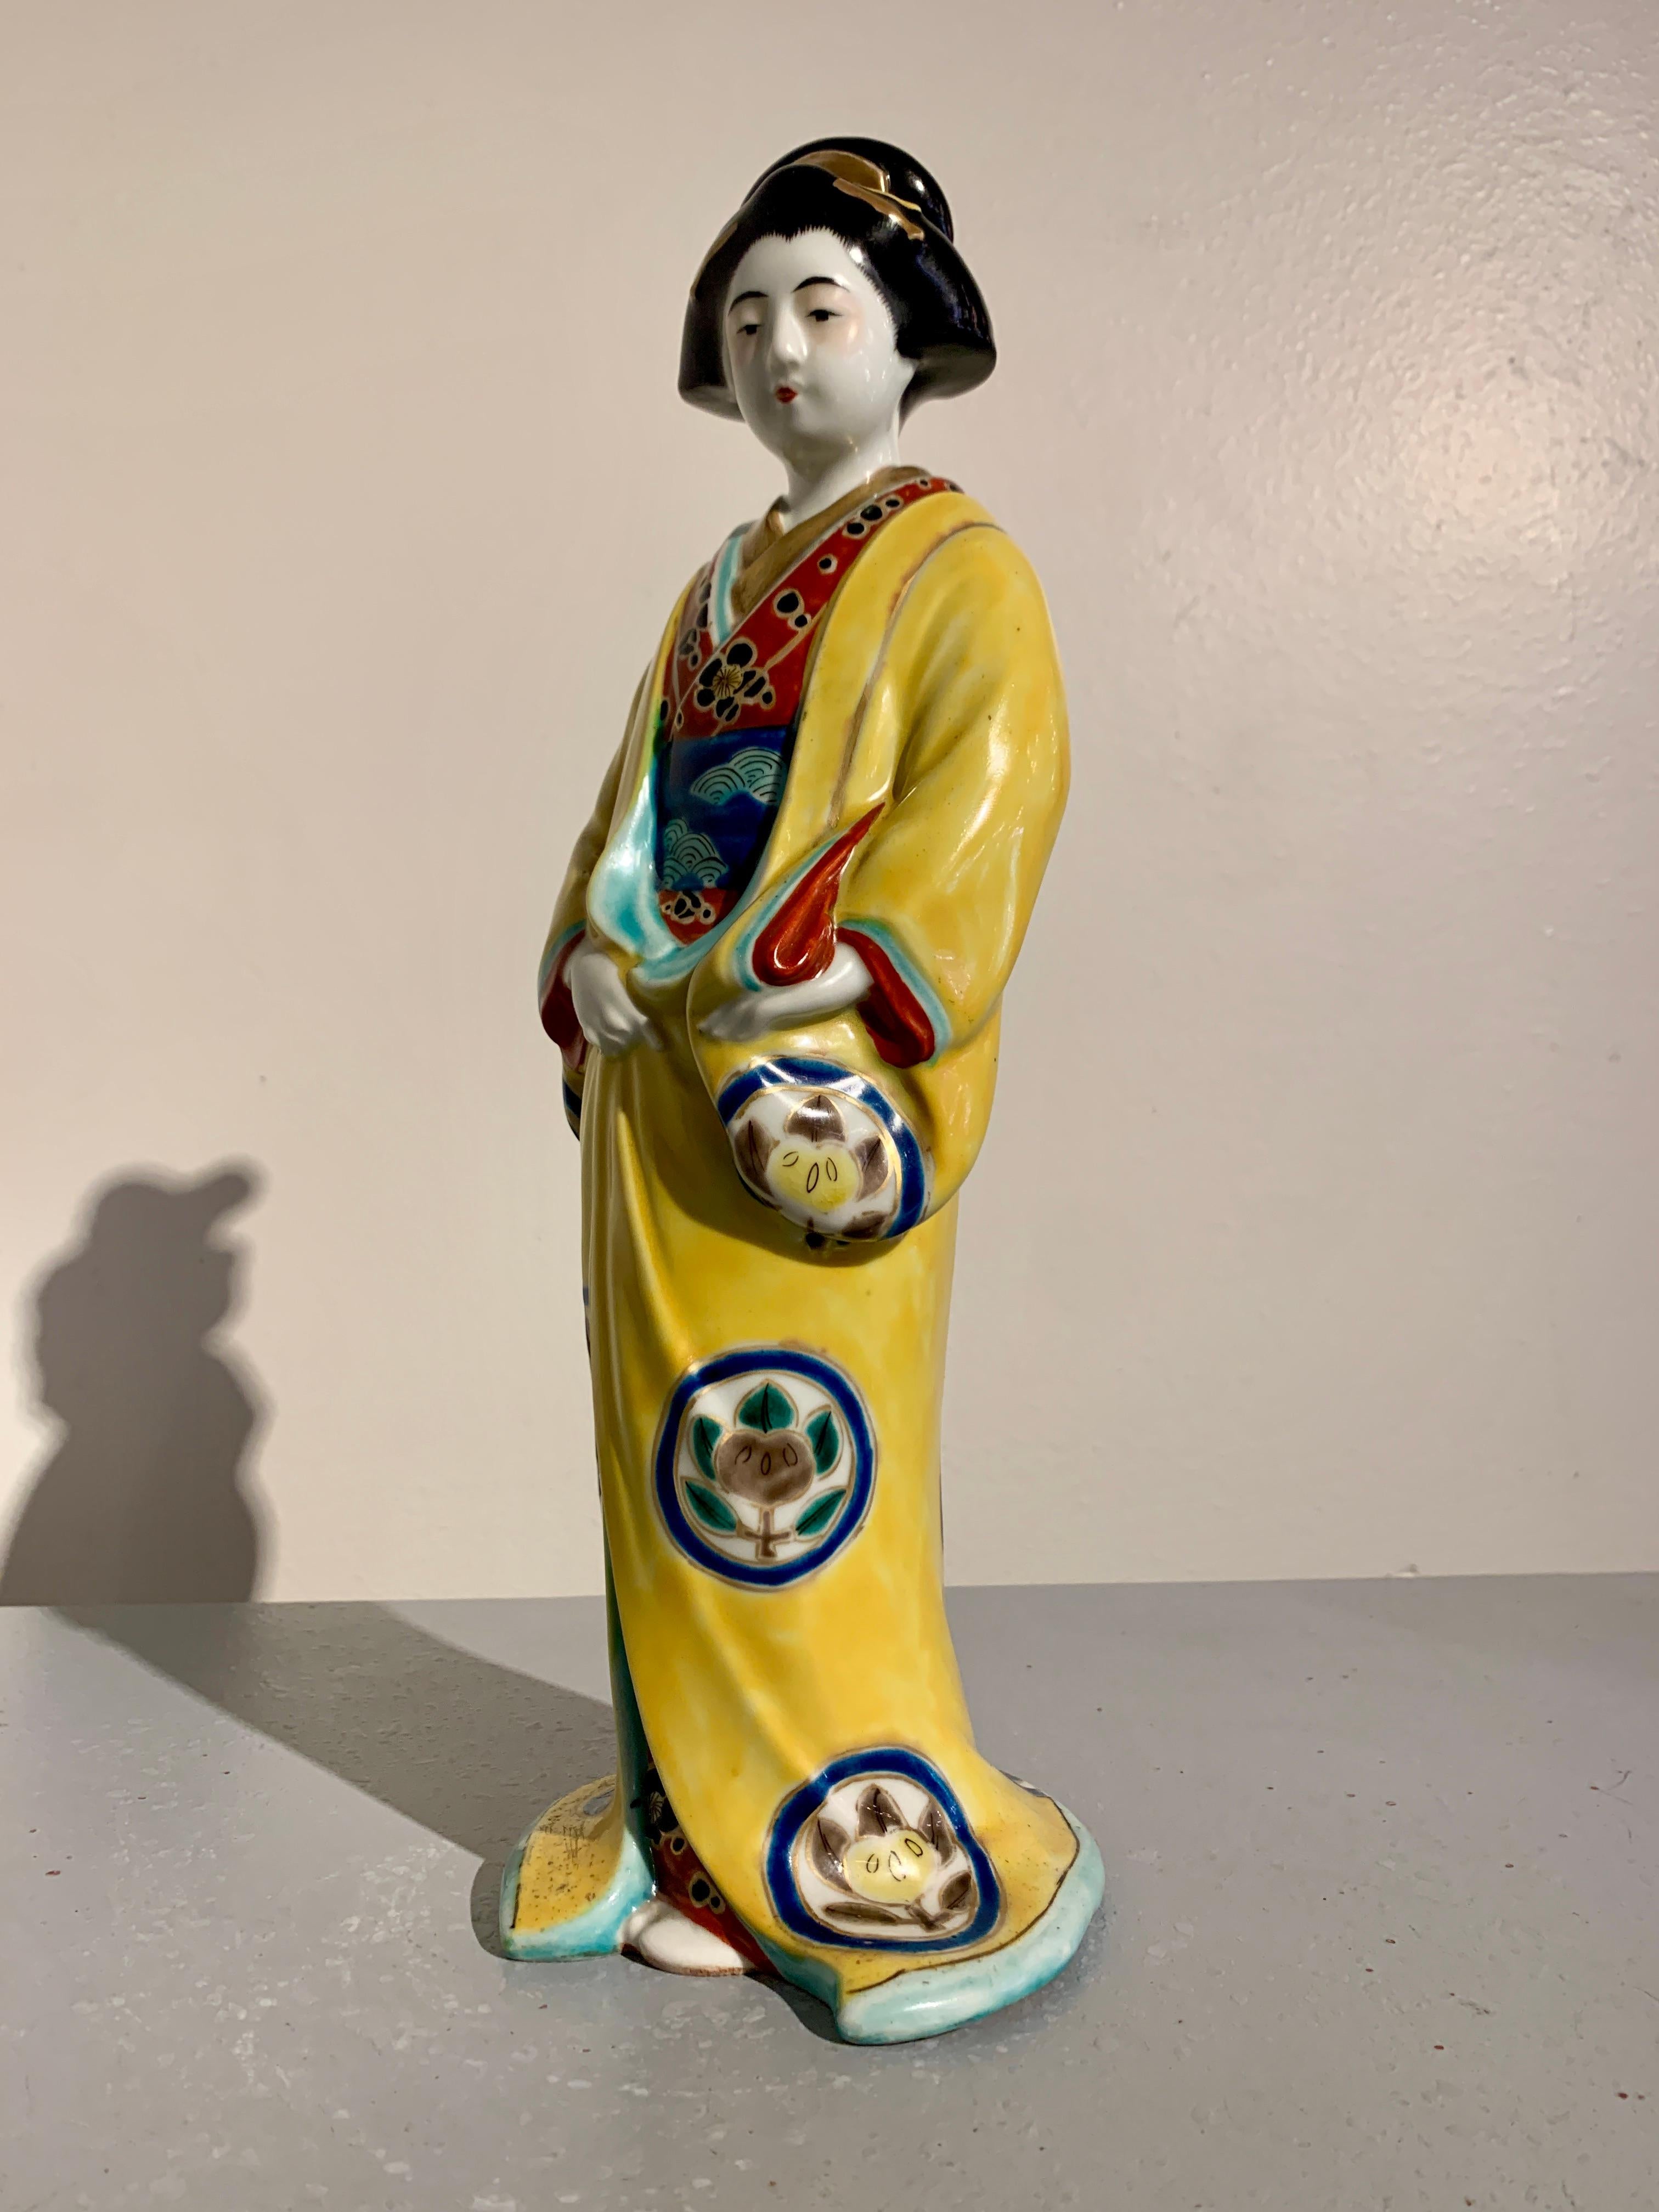 Ravissante figurine en porcelaine émaillée Kutani représentant un bijin ou une geisha, datant du début de l'ère Showa, vers 1930, Japon.

L'élégante silhouette d'une belle femme, appelée bijin, ou peut-être giesha, est représentée vêtue d'un kimono